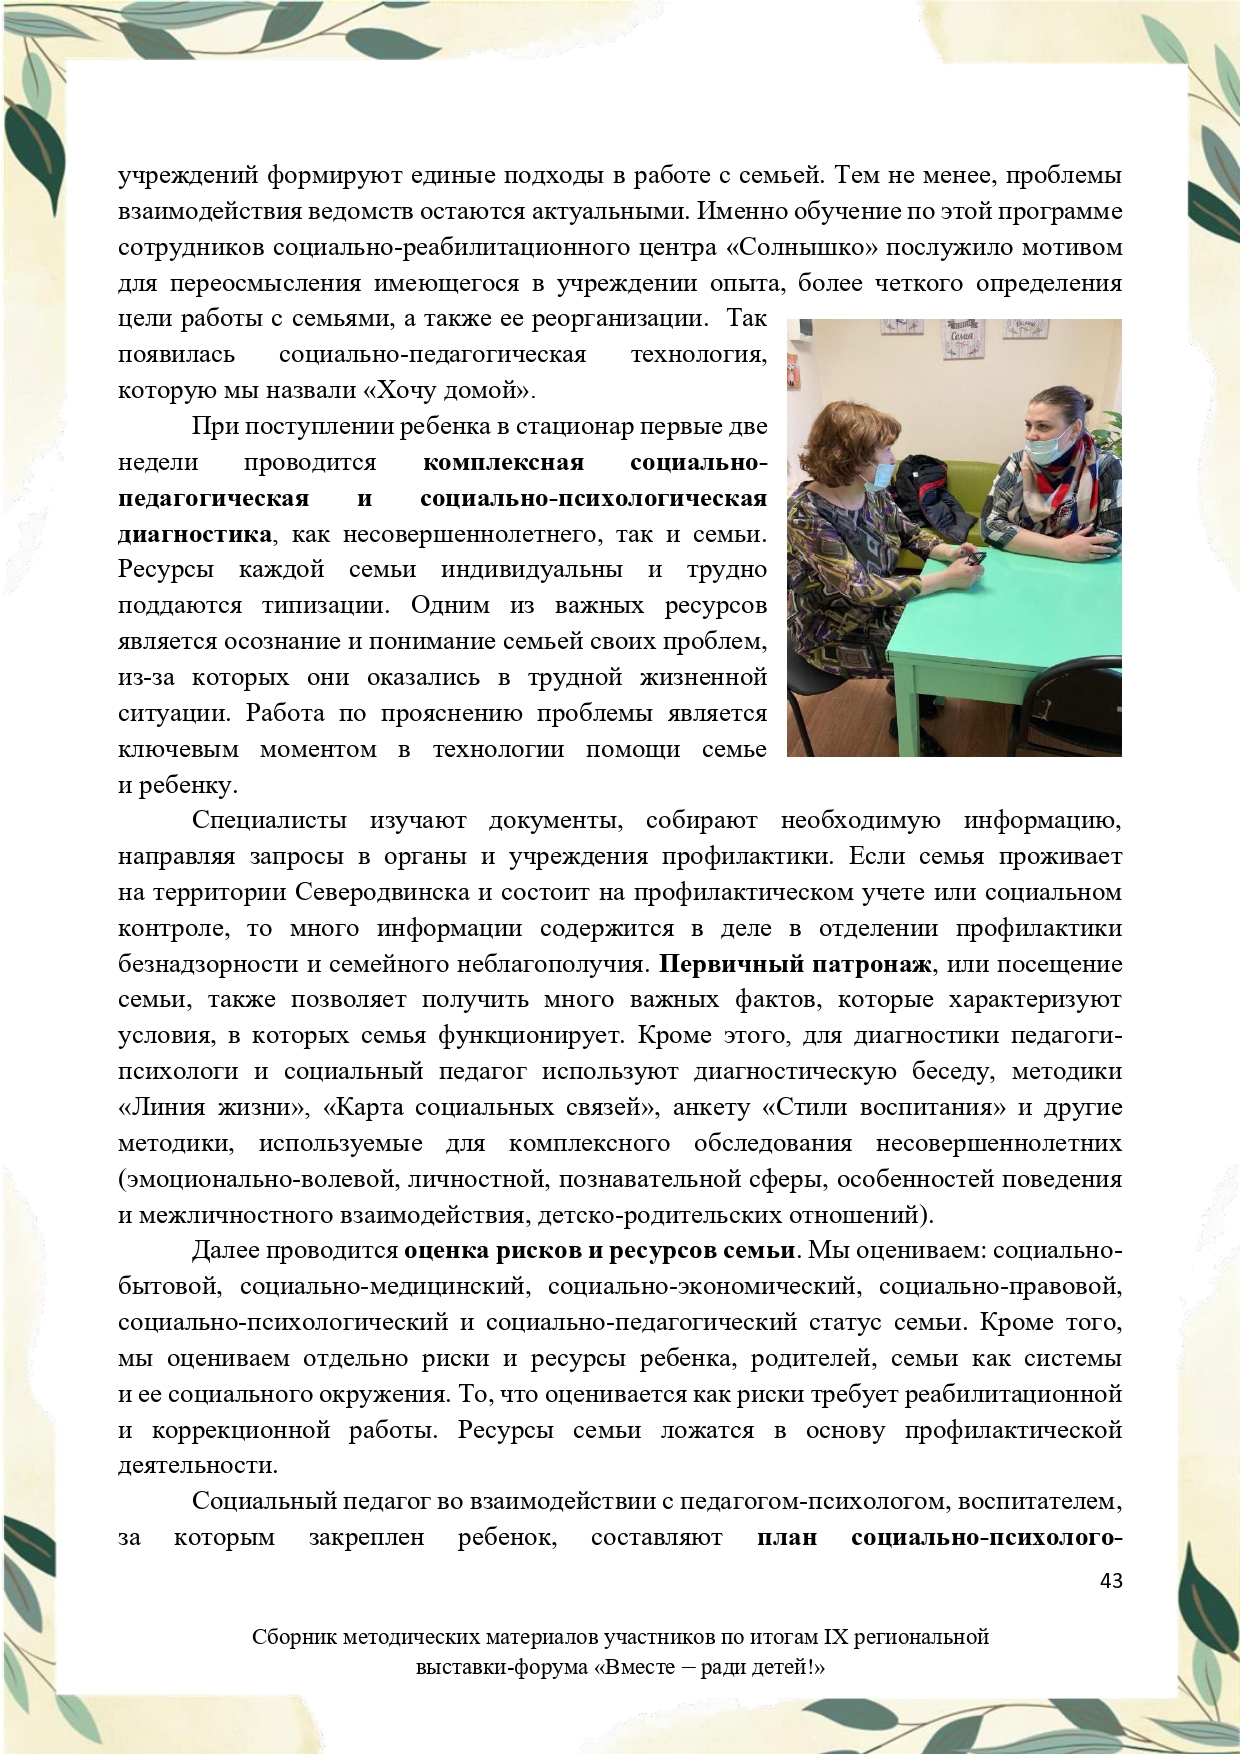 Sbornik_metodicheskikh_materialov_uchastnikov_IX_regionalnoy_vystavki-foruma_Vmeste__radi_detey_33__2023_page-0043